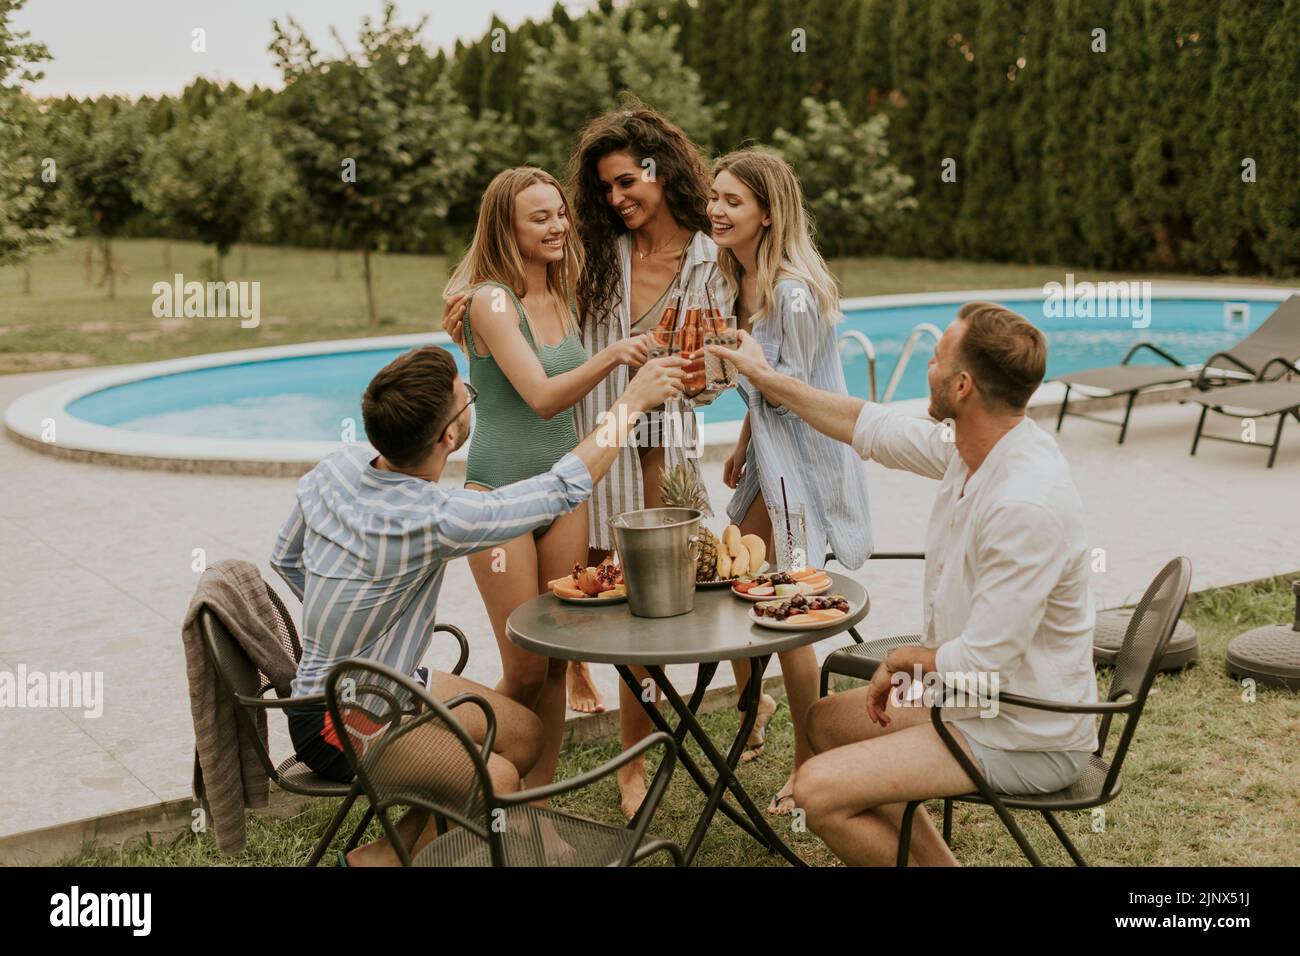 Grupo de jóvenes felices animando con sidra junto a la piscina en el jardín Foto de stock